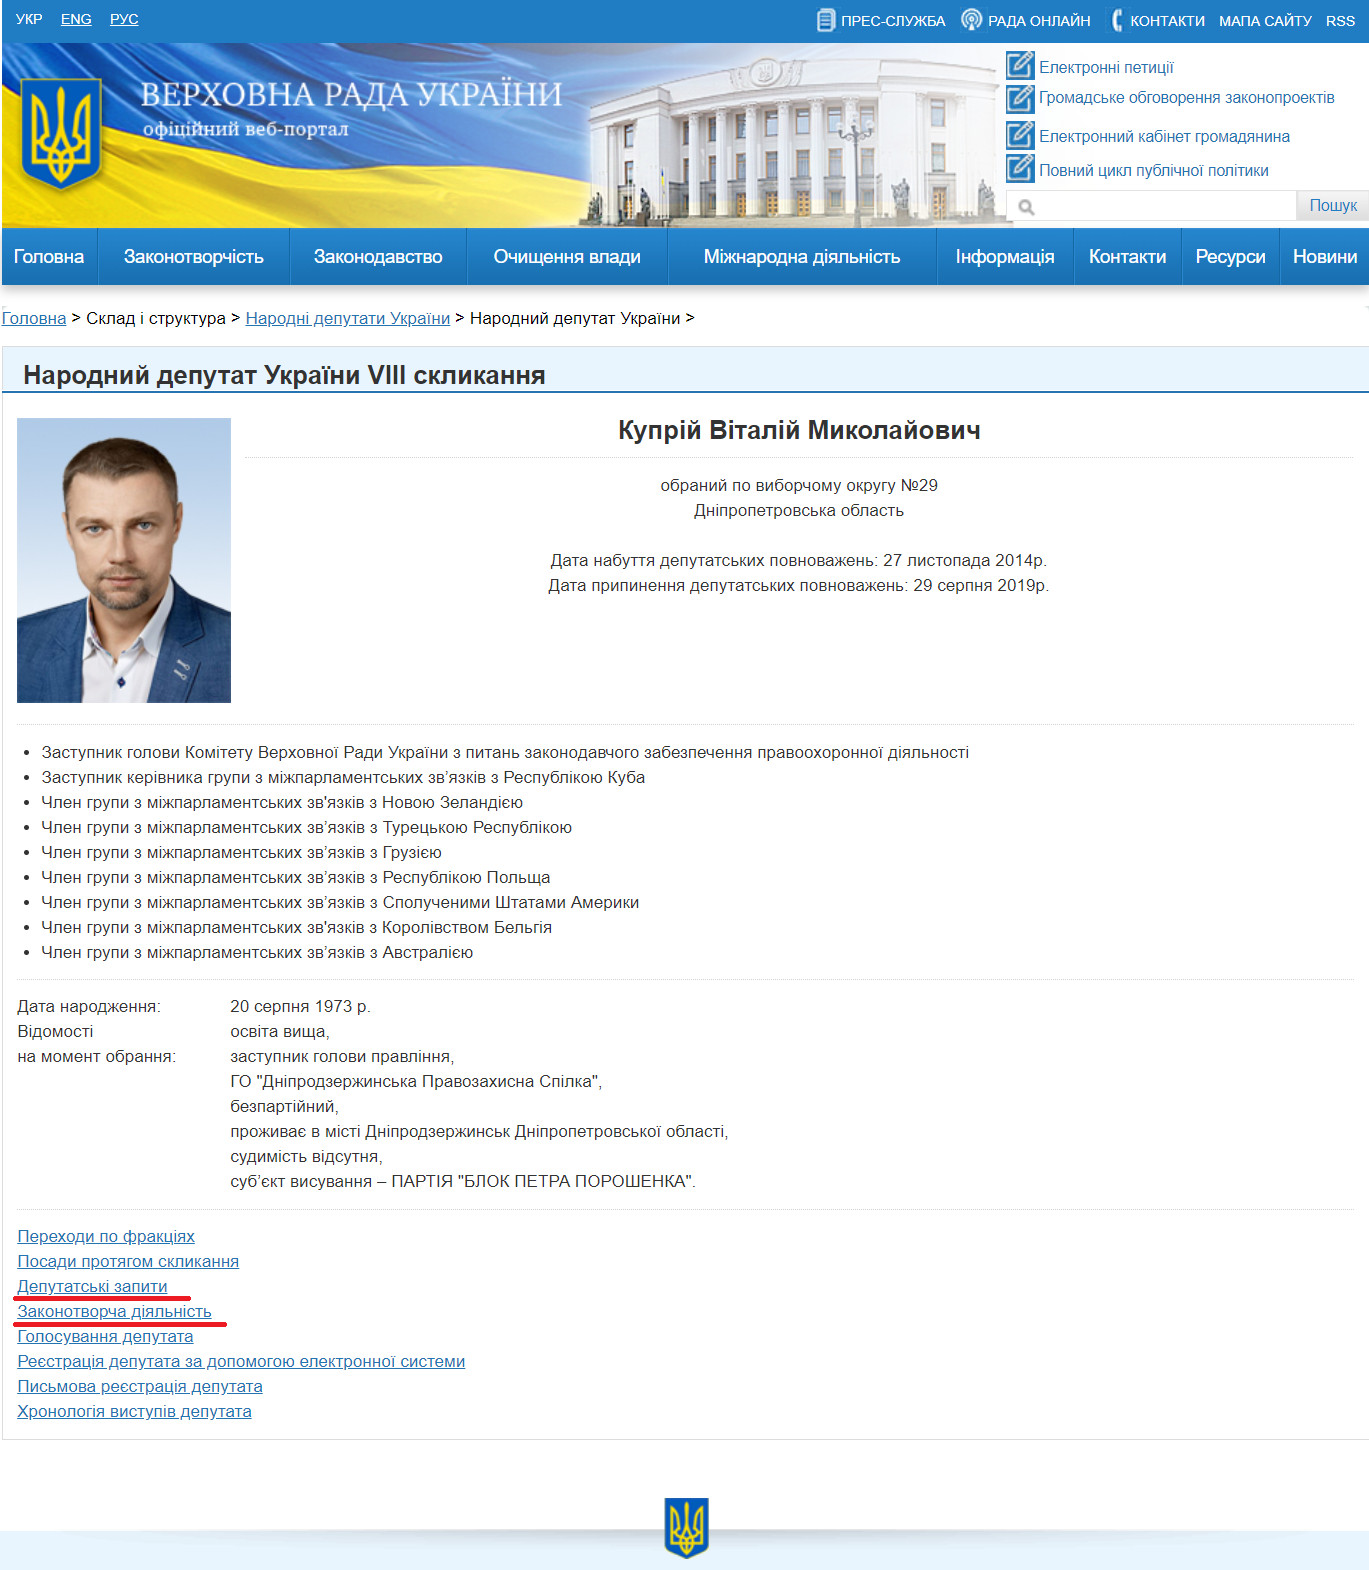 https://itd.rada.gov.ua/mps/info/expage/18111/9